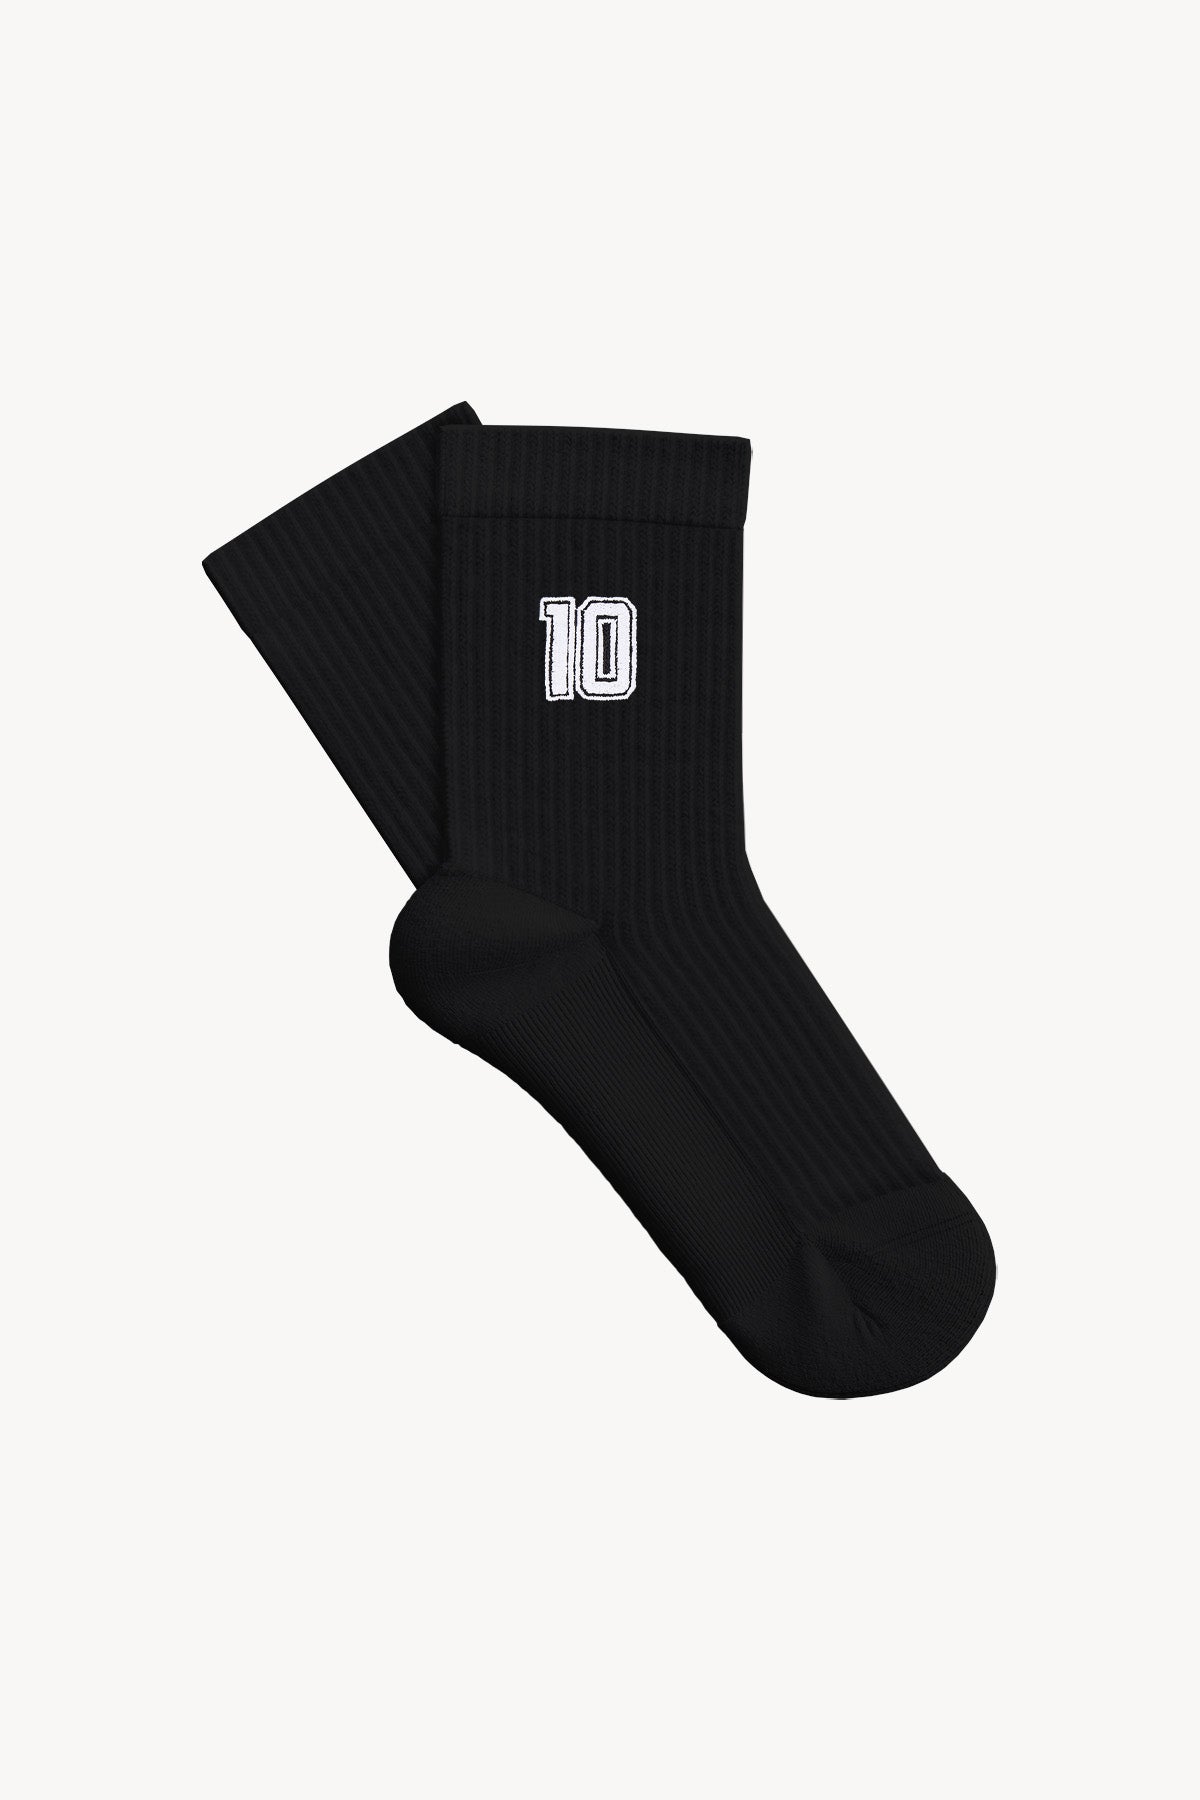 Number 10 Havlu Çorap - Siyah